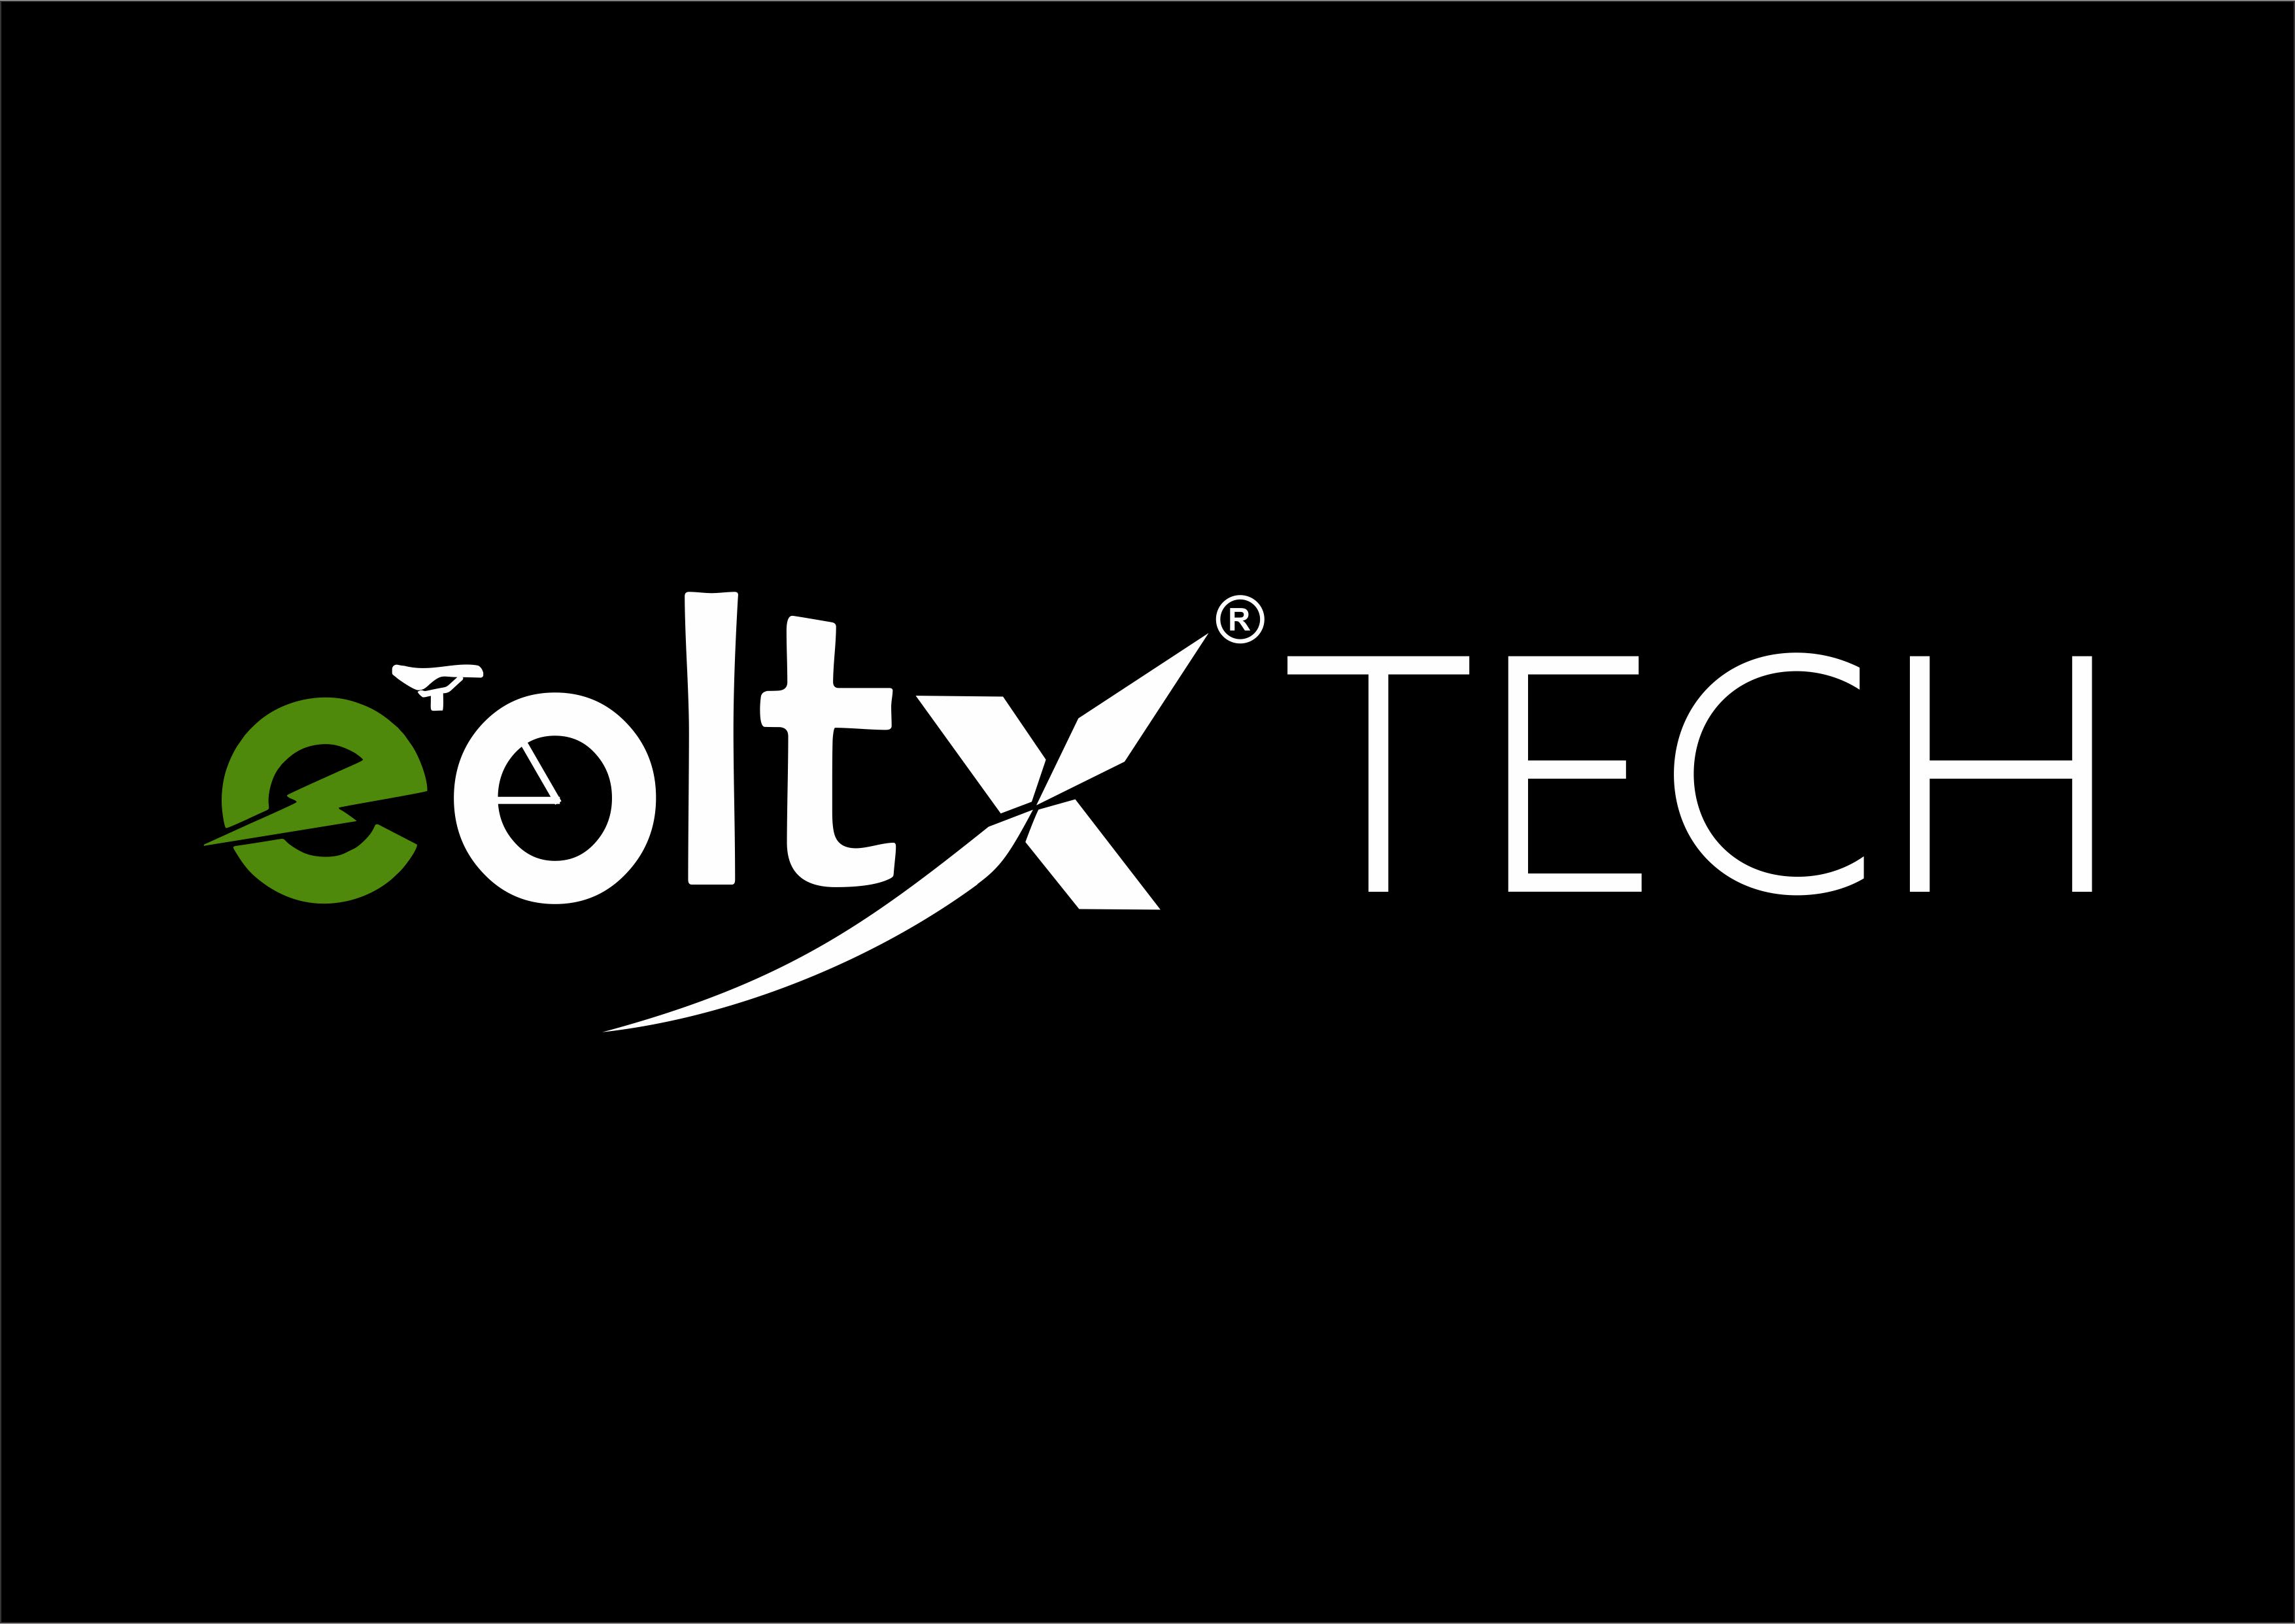 eoltX Tech